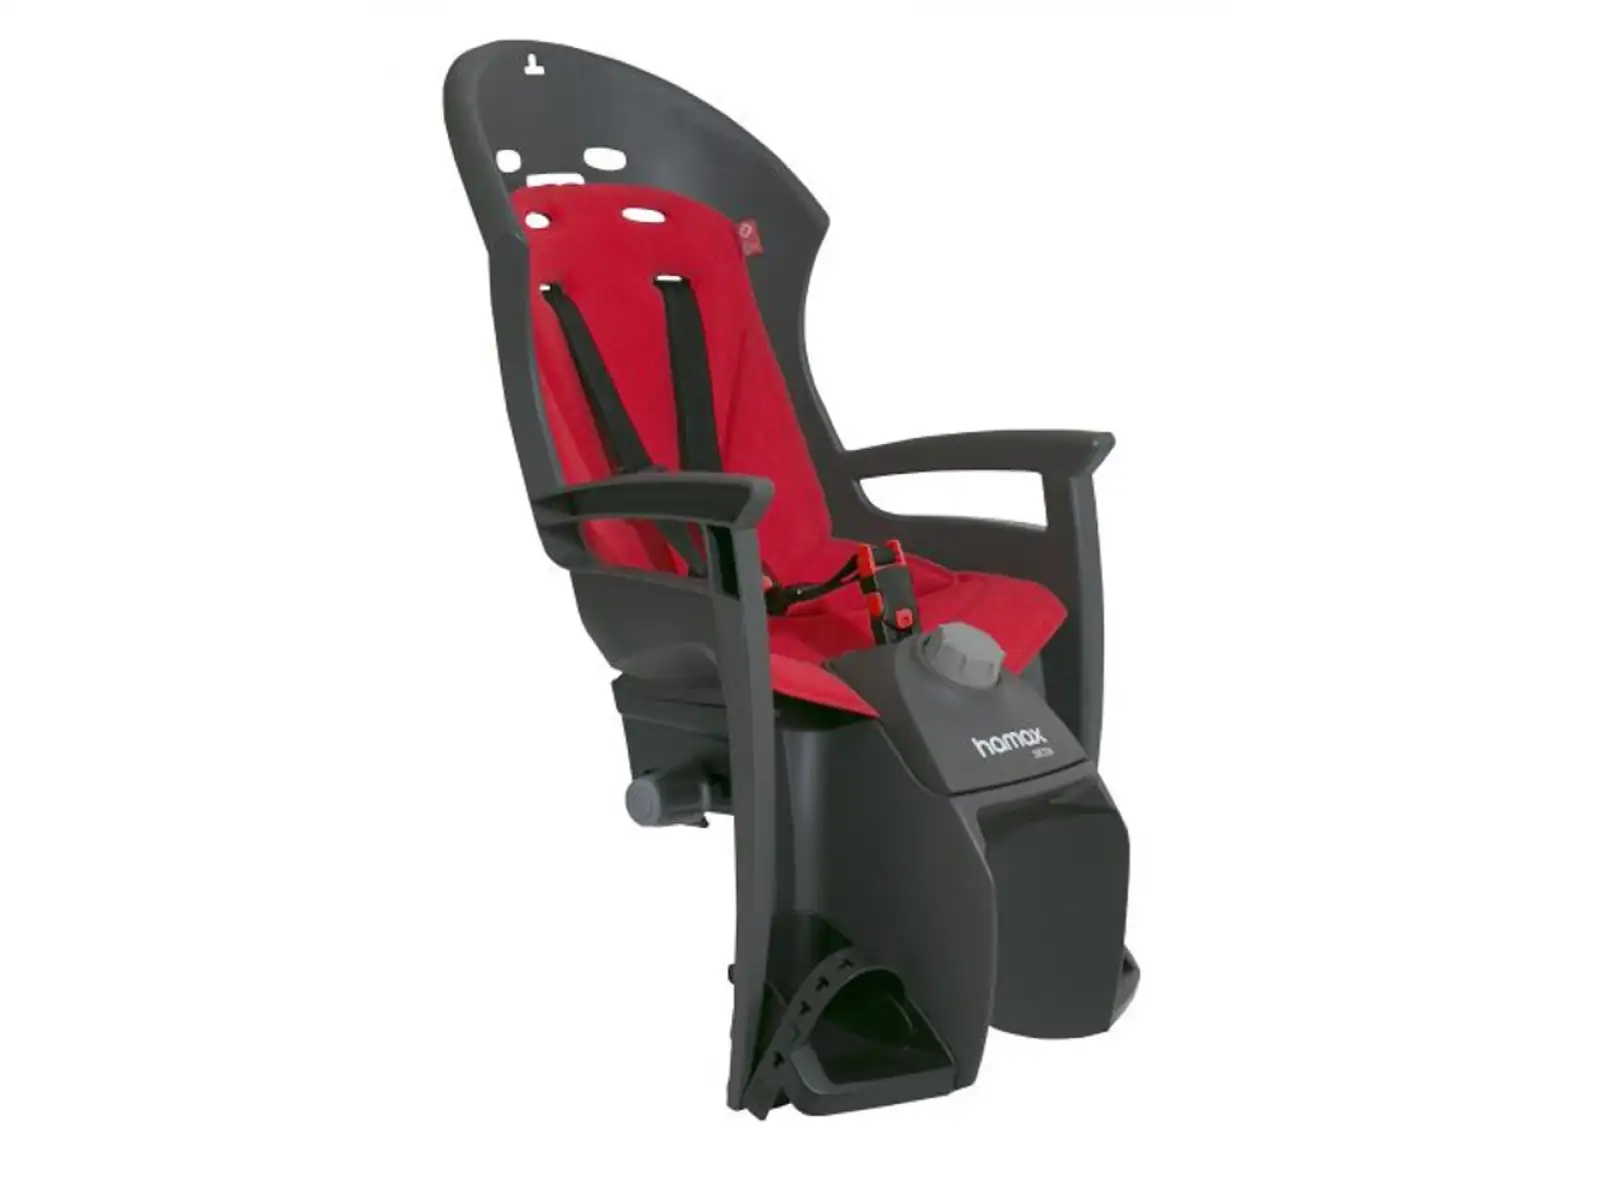 Hamax Siesta Plus detská sedačka tmavá sivá/červená